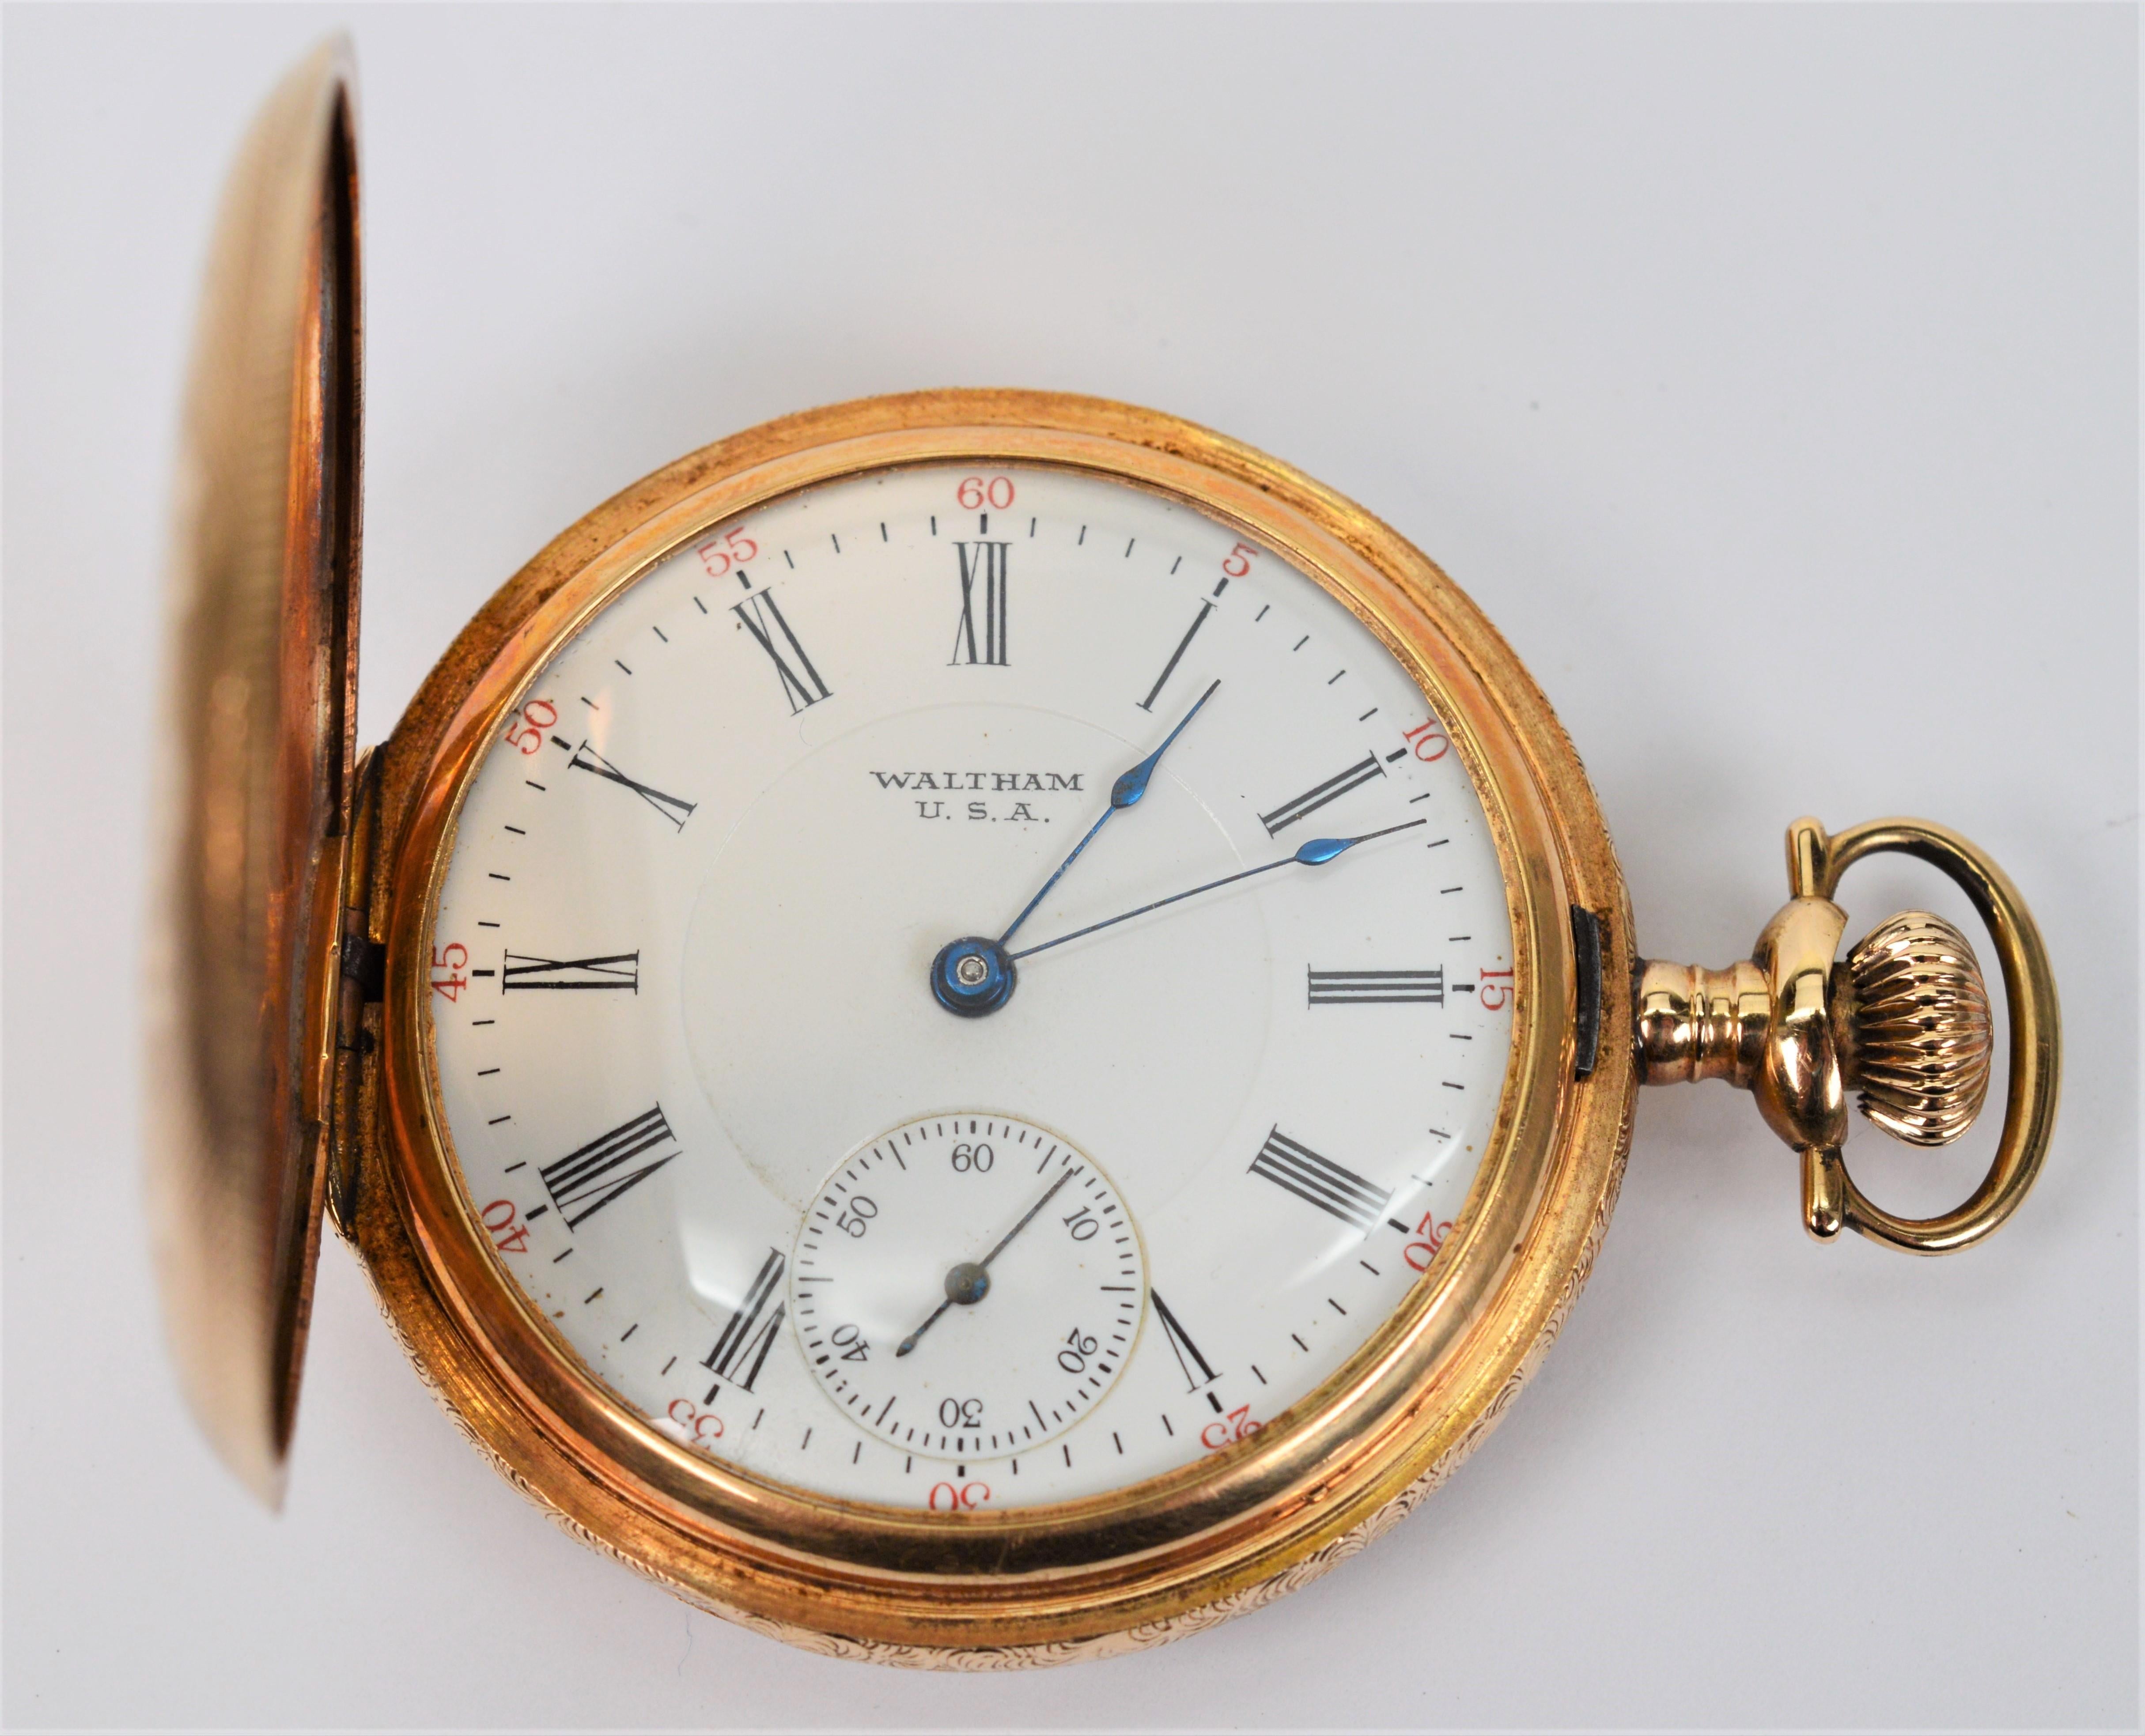 Von American Waltham Watch Company, 14 Karat Gelbgold Taschenuhr Bartlett Grade Modell Nr. 1908 in Größe 16 mit Seriennummer 2303387.
Hat siebzehn Juwelen Bewegung mit einem ausgefallenen Säure geätzt Breguet Kirche Regulator montiert in einer Hand